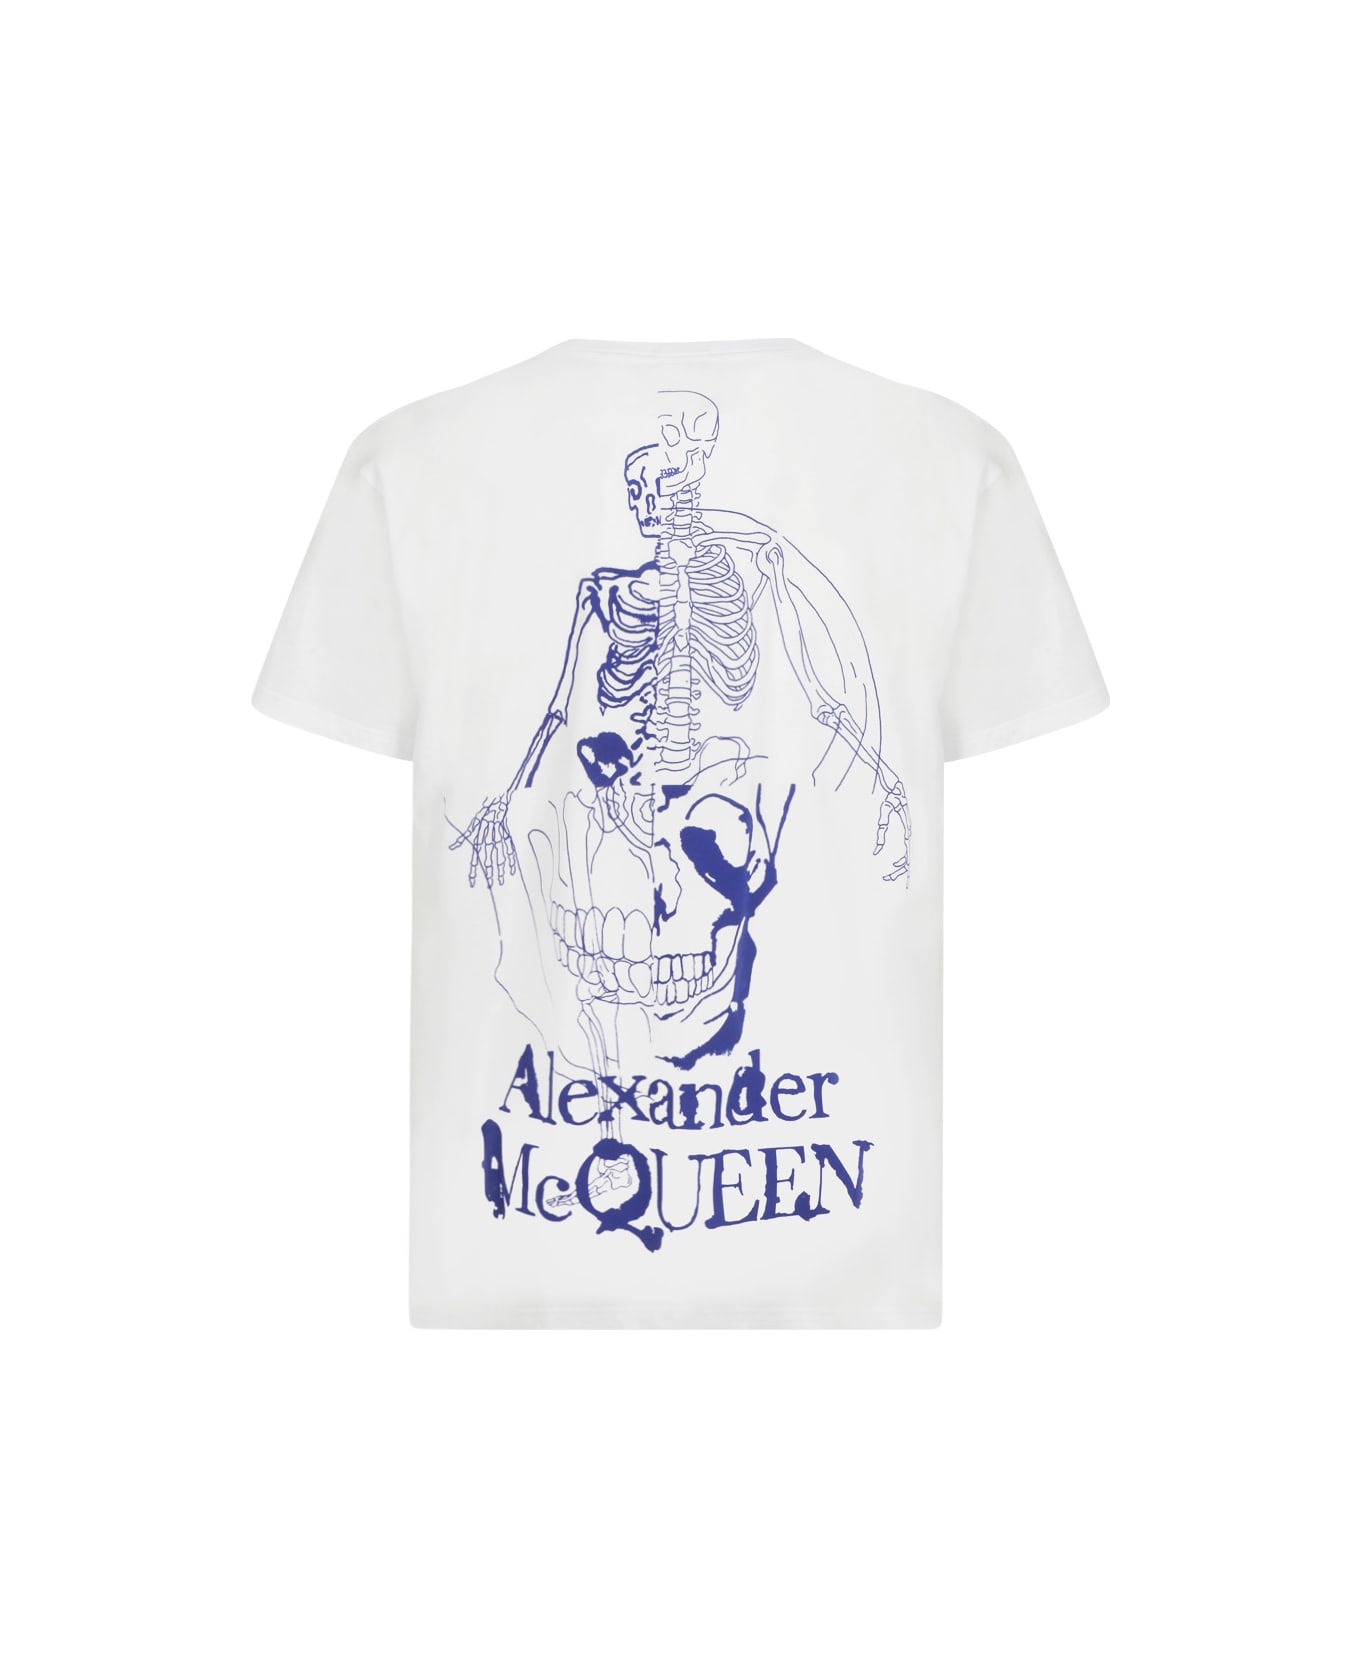 Alexander McQueen T-shirt - White/blue